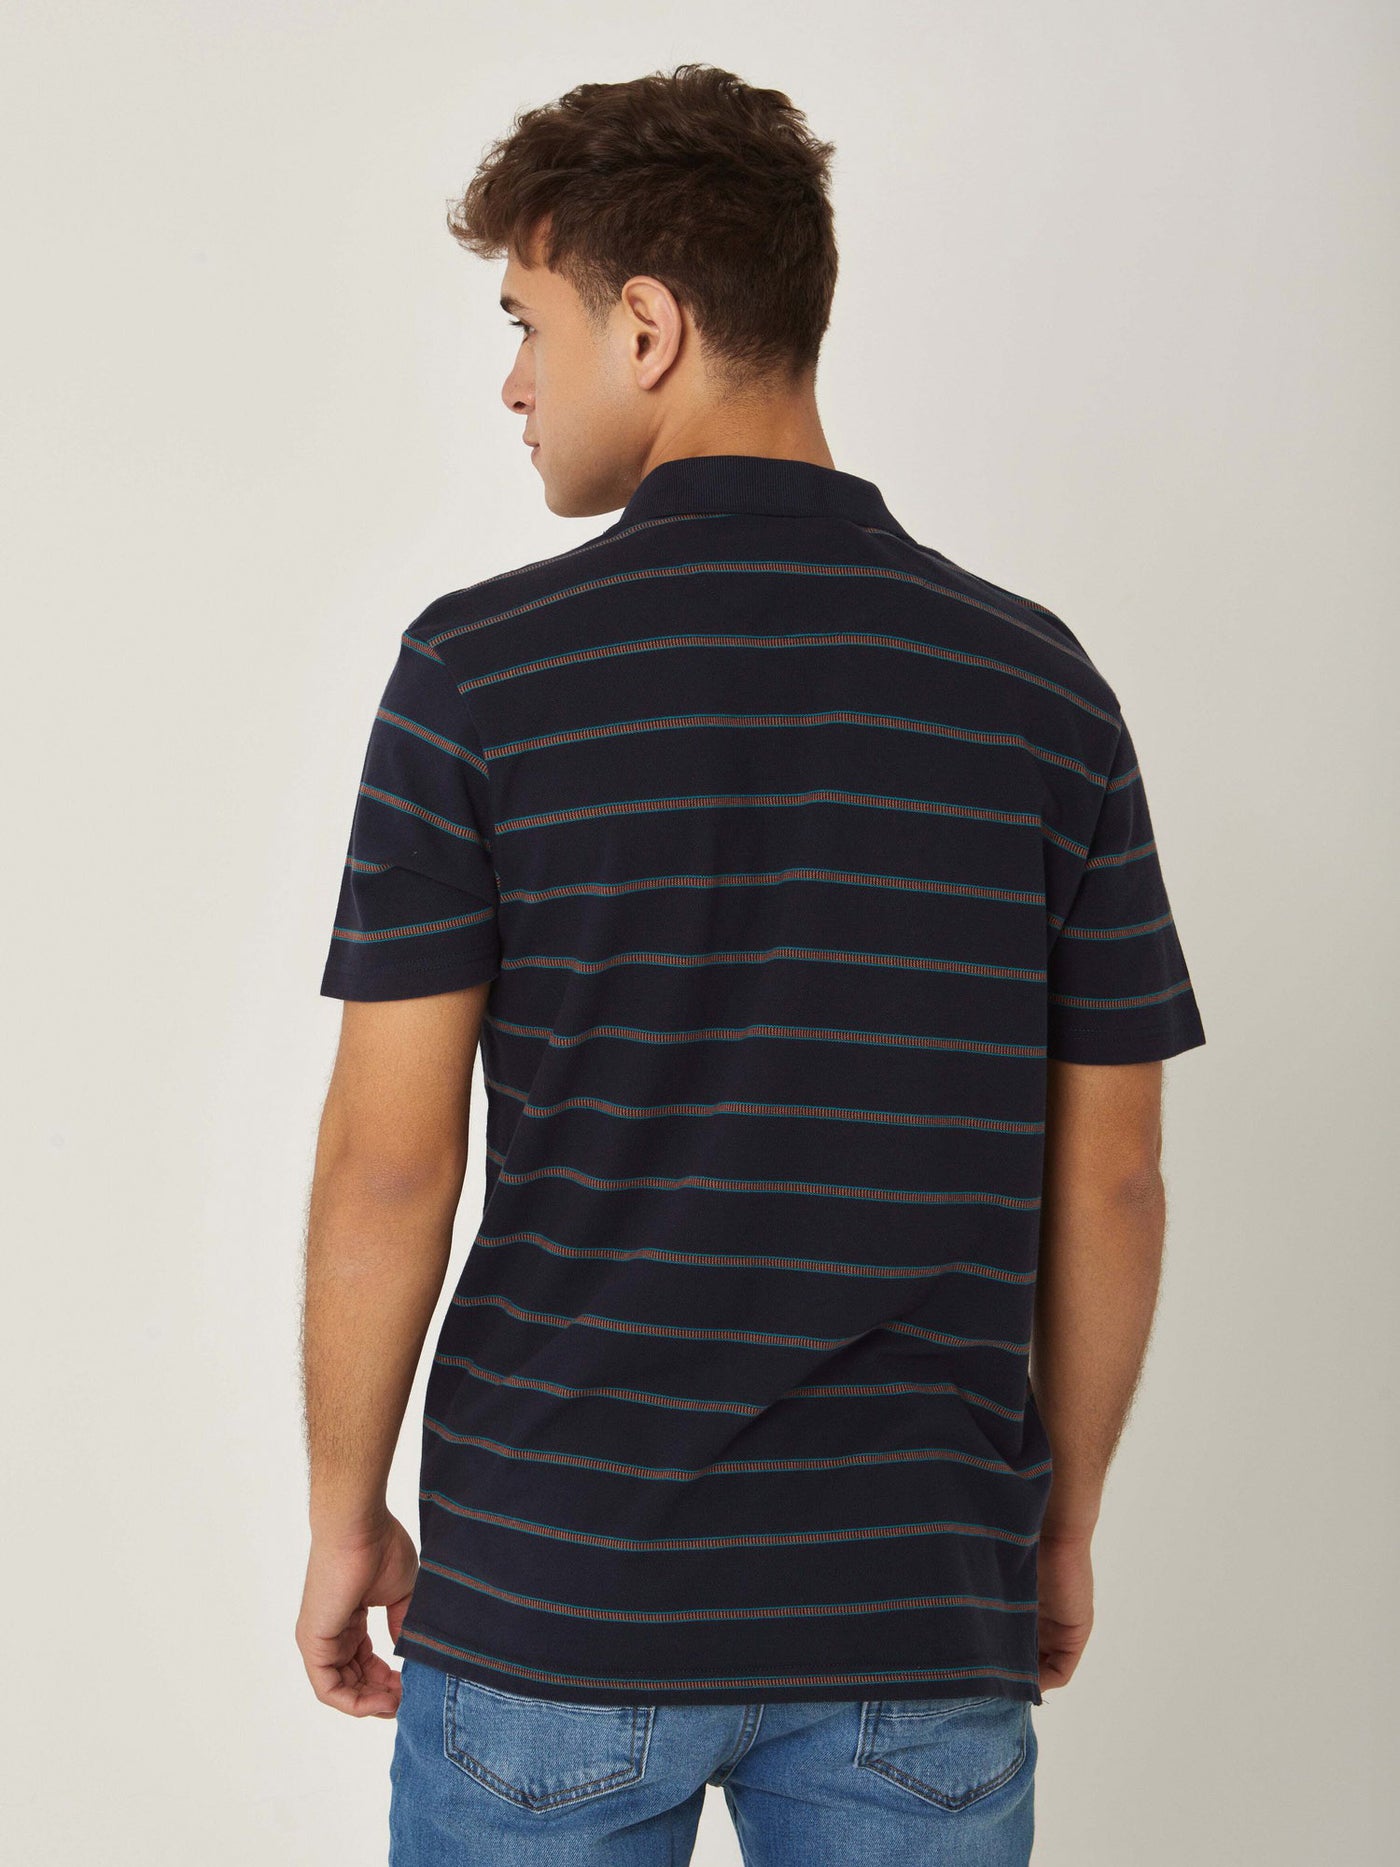 Polo Shirt - Turn Down Collar - Striped